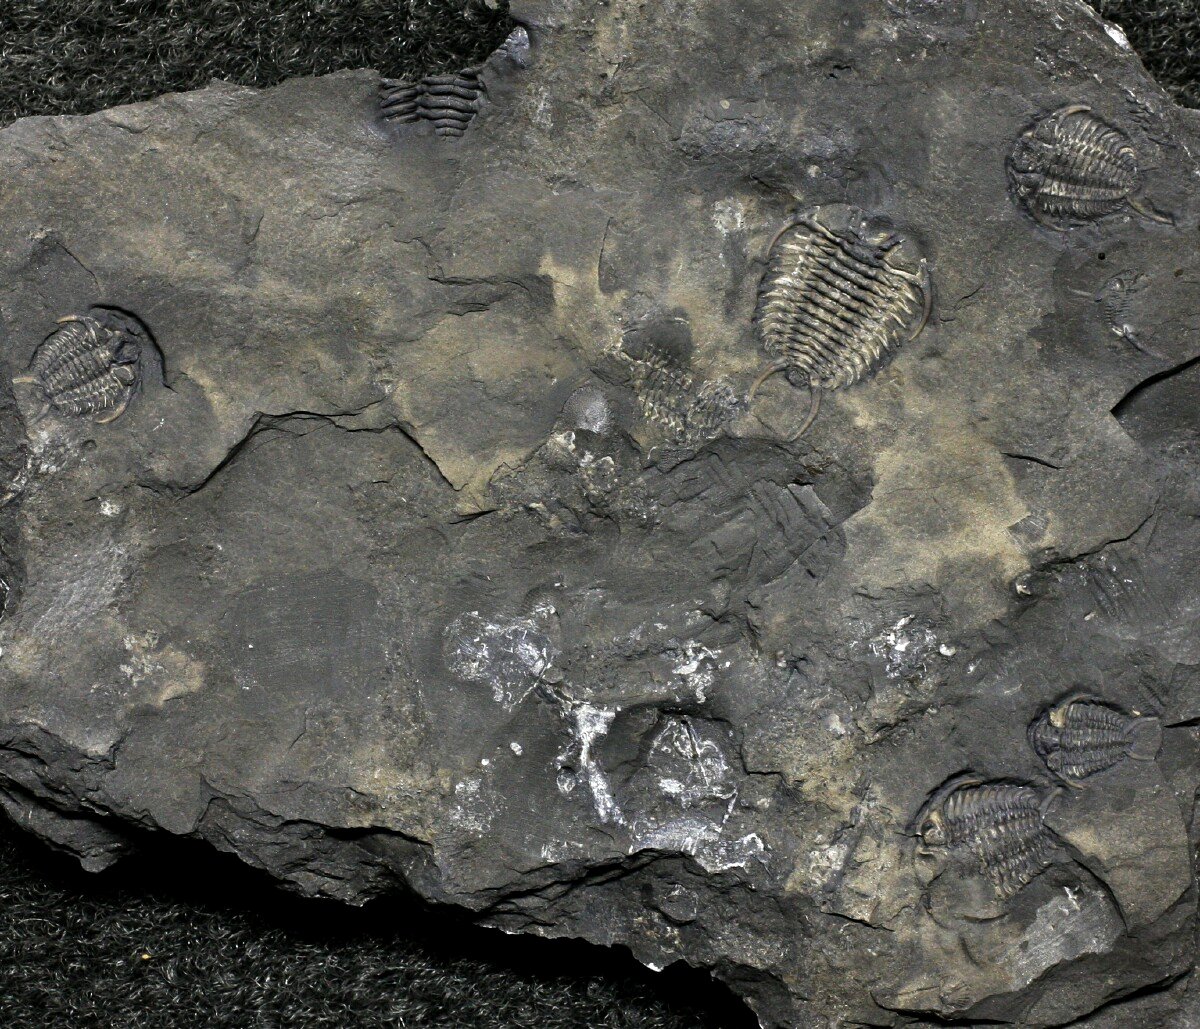 Ceraurus Trilobites